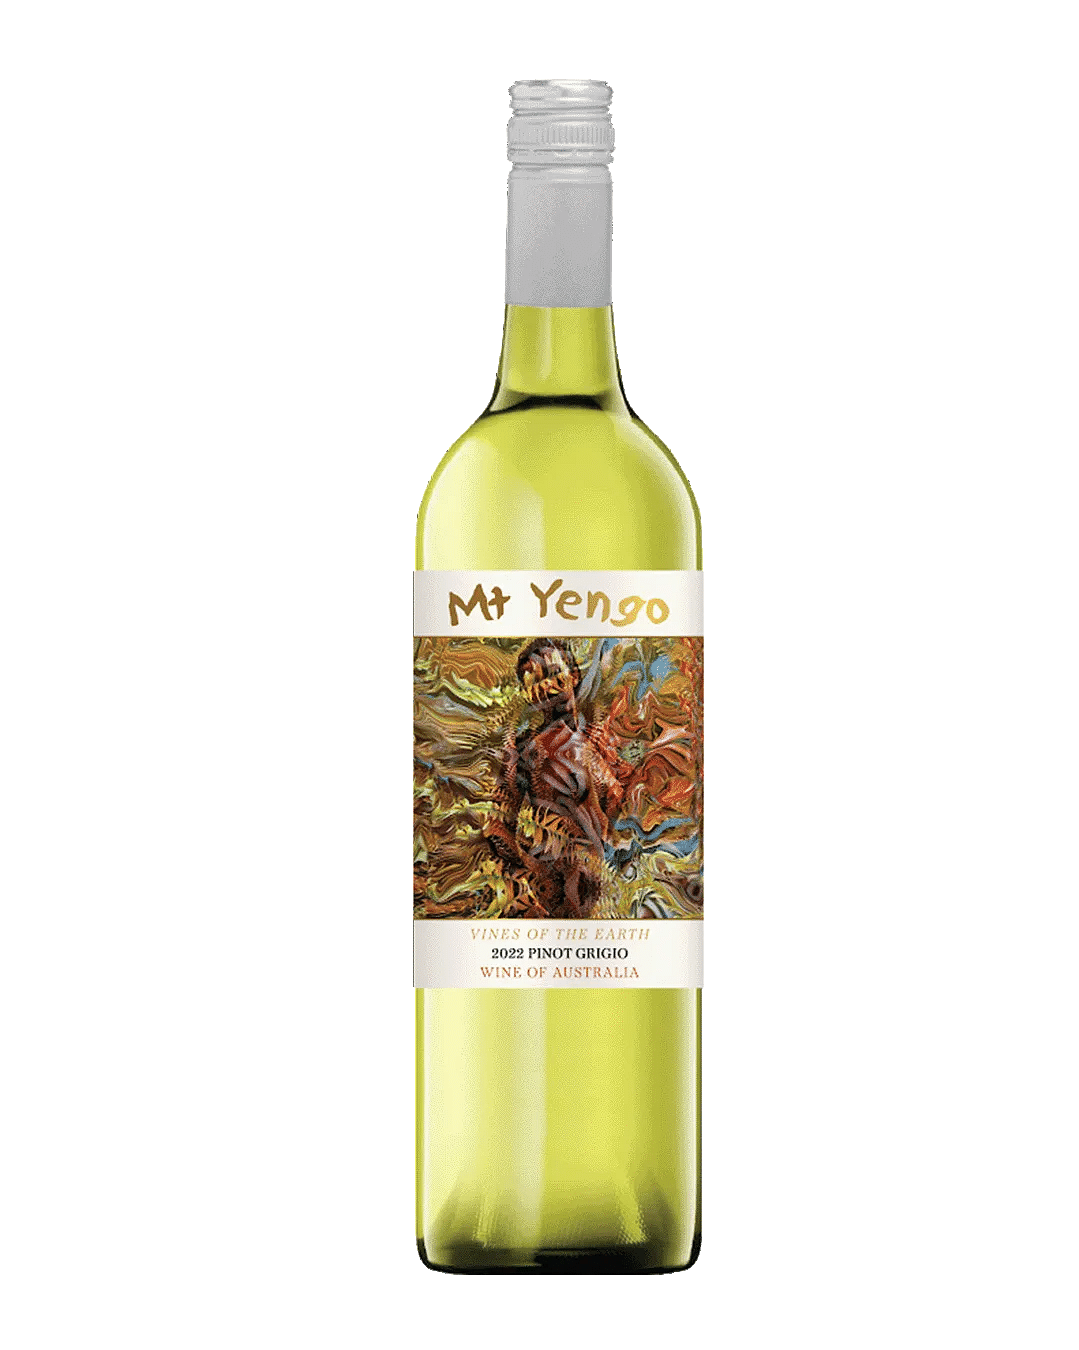 Mt Yengo 'Vines of the Earth' Pinot Grigio